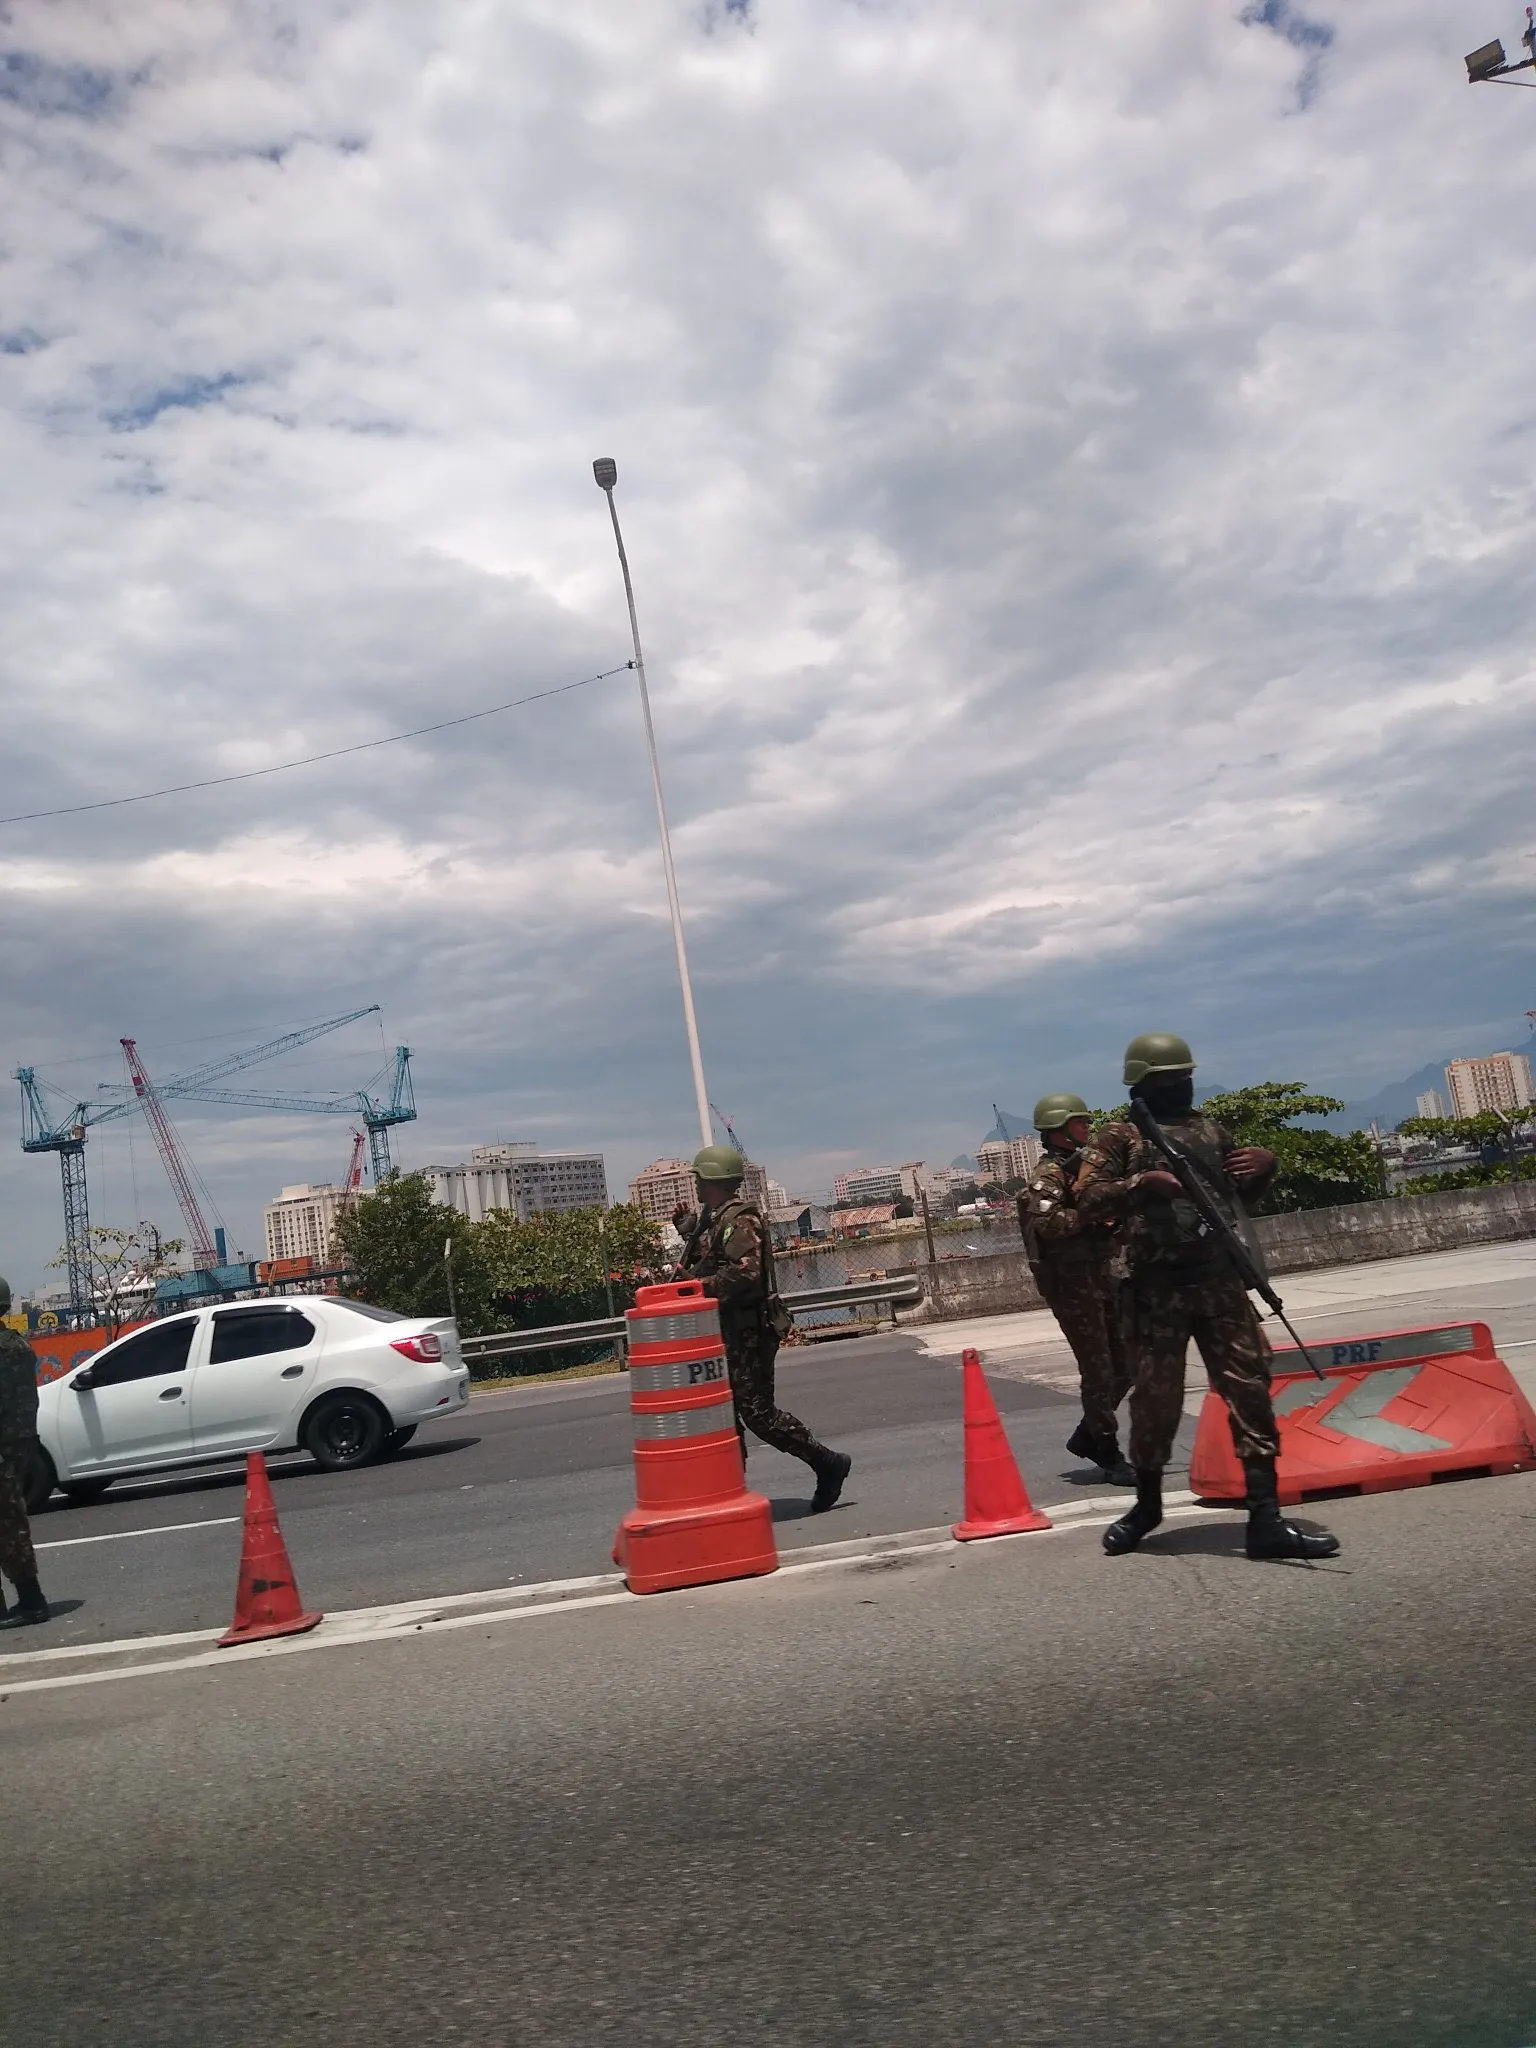 Imagens publicadas nas redes sociais mostram vários soldados armados com fuzis no local